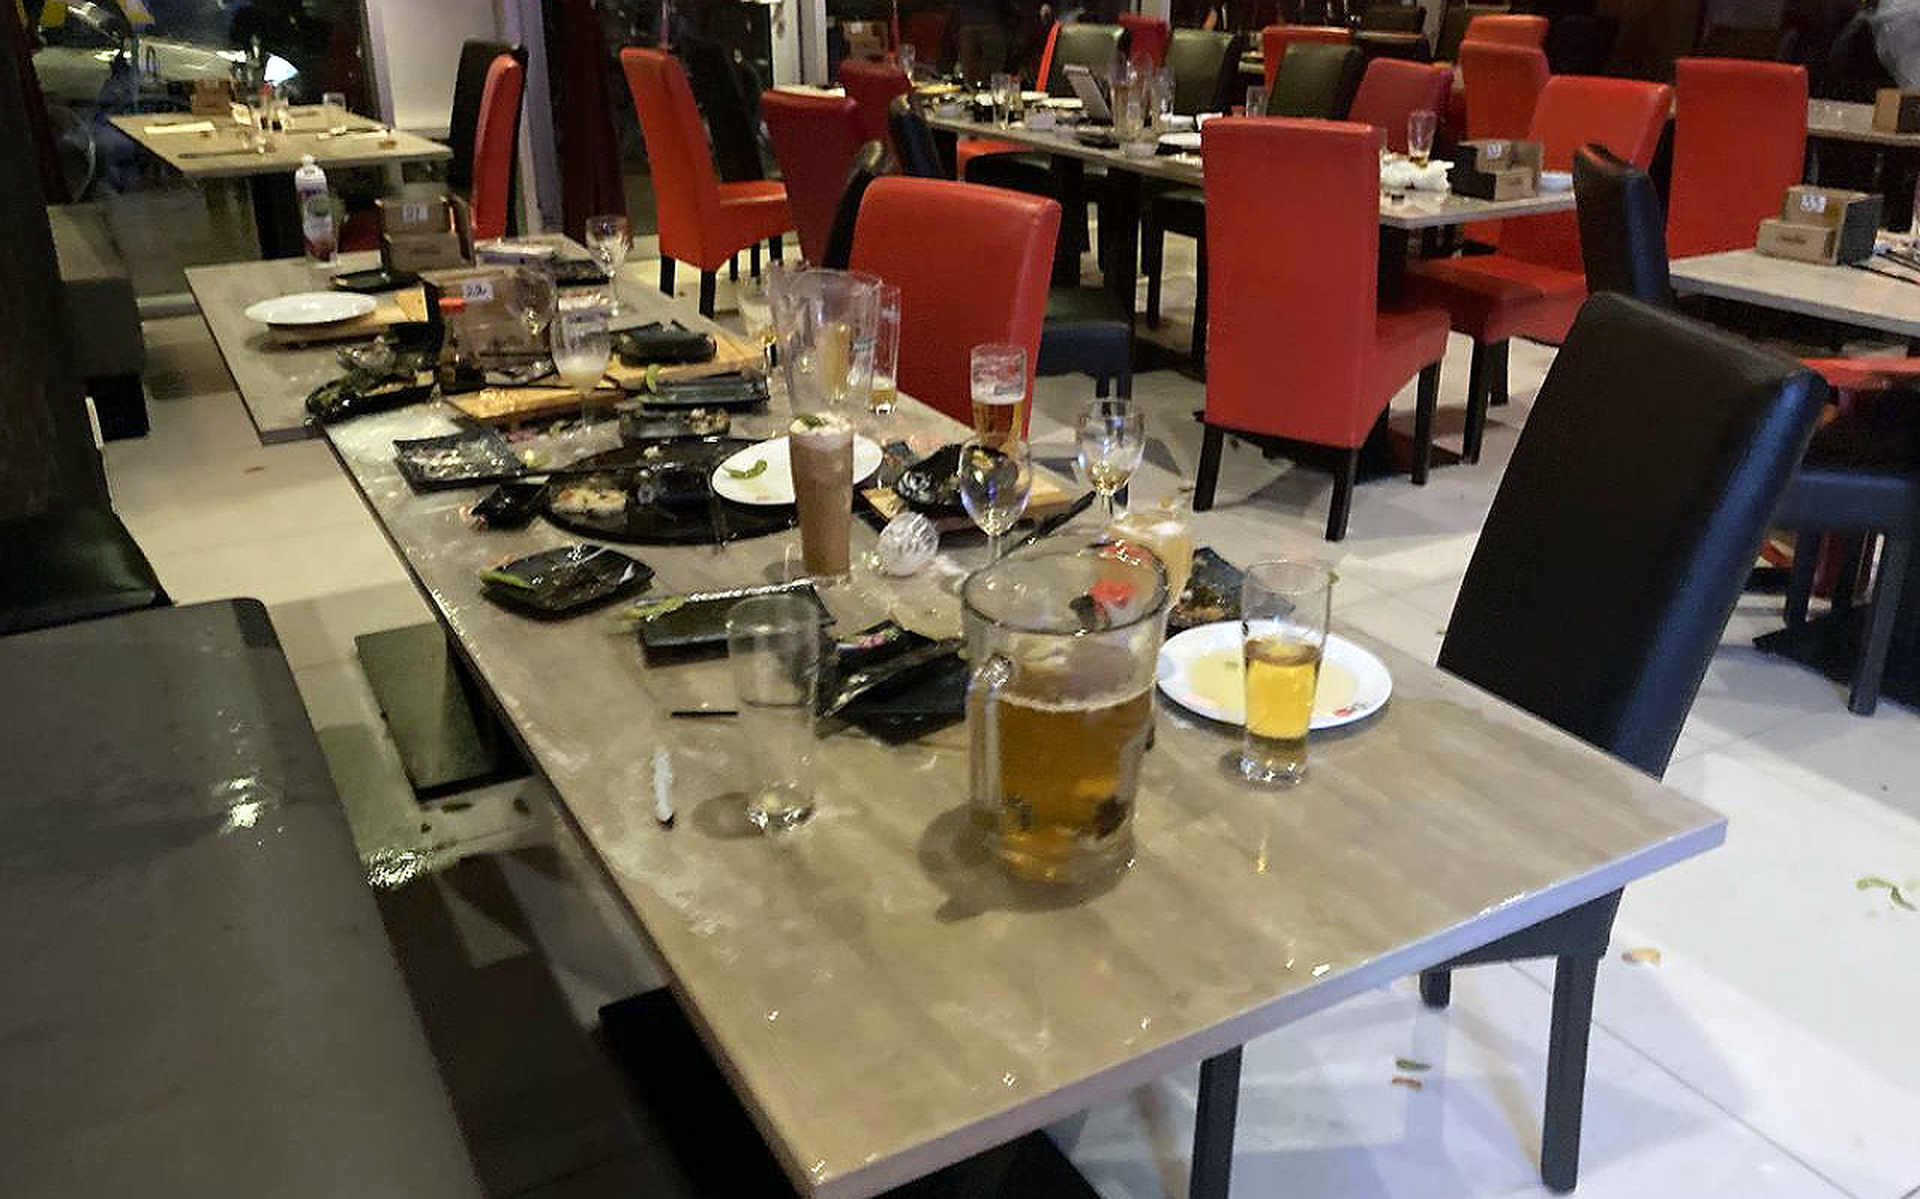 De achtergelaten chaos in het restaurant met etensresten en bier op de tafels, stoelen en de grond.